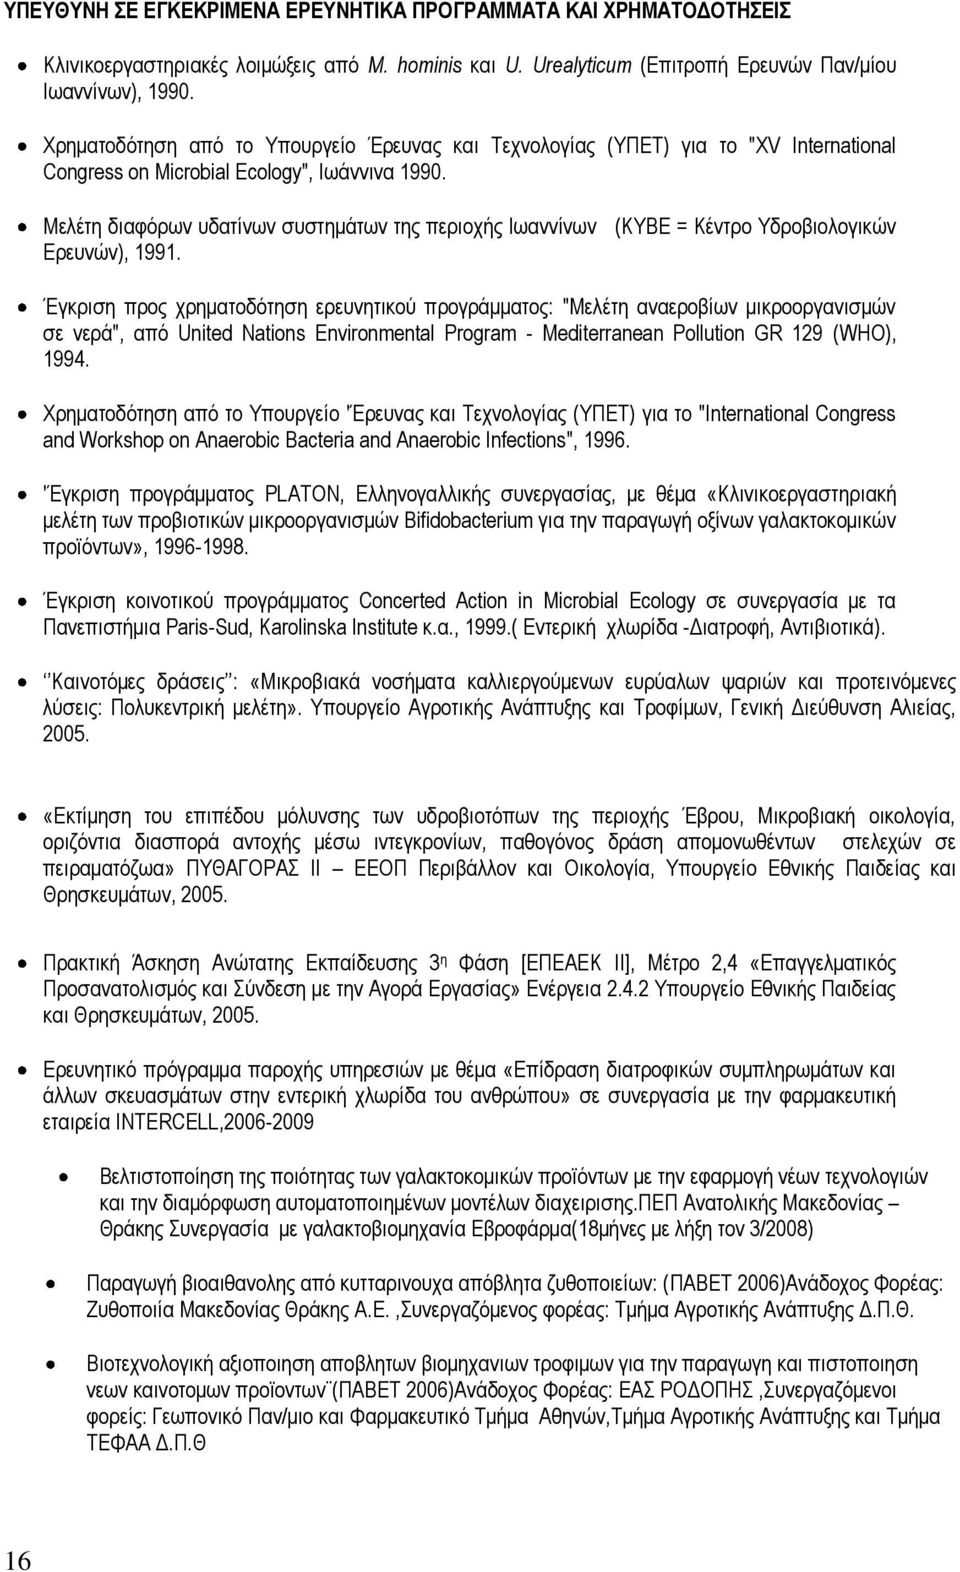 Μελέτη διαφόρων υδατίνων συστημάτων της περιοχής Ιωαννίνων (ΚΥΒΕ = Κέντρο Υδροβιολογικών Ερευνών), 1991.